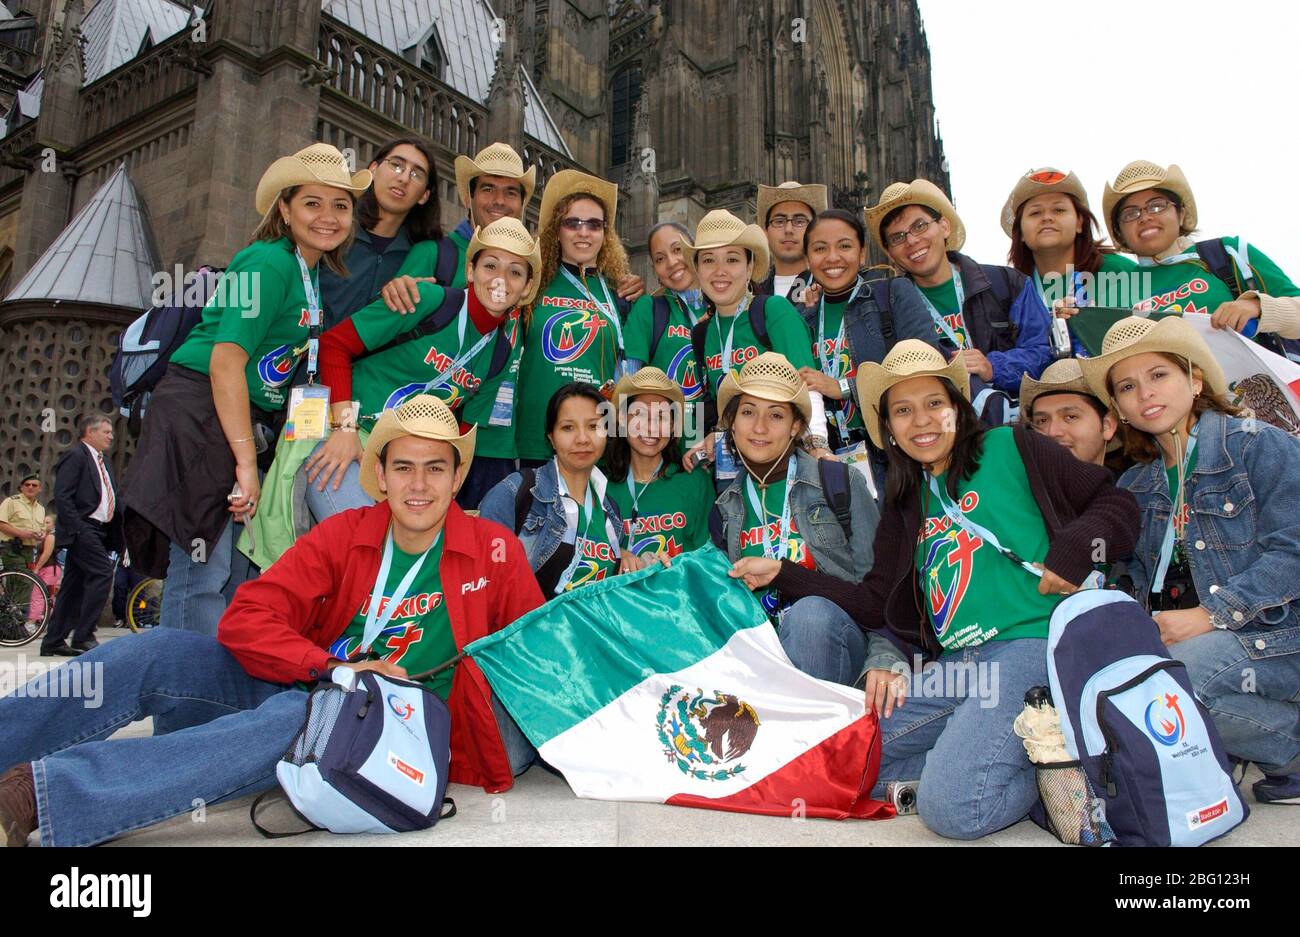 Koeln, 16.8.05, Weltjugendtag 2005: Mexikanische Pilger am Kšlner Dom | les pèlerins mexicains posent avec leur drapeau à la cathédrale de Cologne [ © Michael Kolvenbach, im Kamp 25 , D-40667 Meerbusch , Deutschland tel.: +49(0)2132 911 604 , fax: +49(0)2132 605 Bankbindmoin| +41|| +41(0)41|||||| +41(0|||||||||| 0||||| 0|||||||||| Deutsche Bank Düsseldorf , KTO.: 0436535 , BLZ: 300 700 24 , BIC: DEUTDEDBDUE , IBAN: DE78300700240043653500 , St. SATZ: 7% , E-mail: mikol@kolvenbach-photo.de , Foto ist honorarpflichtig, Bei Banque D'Images